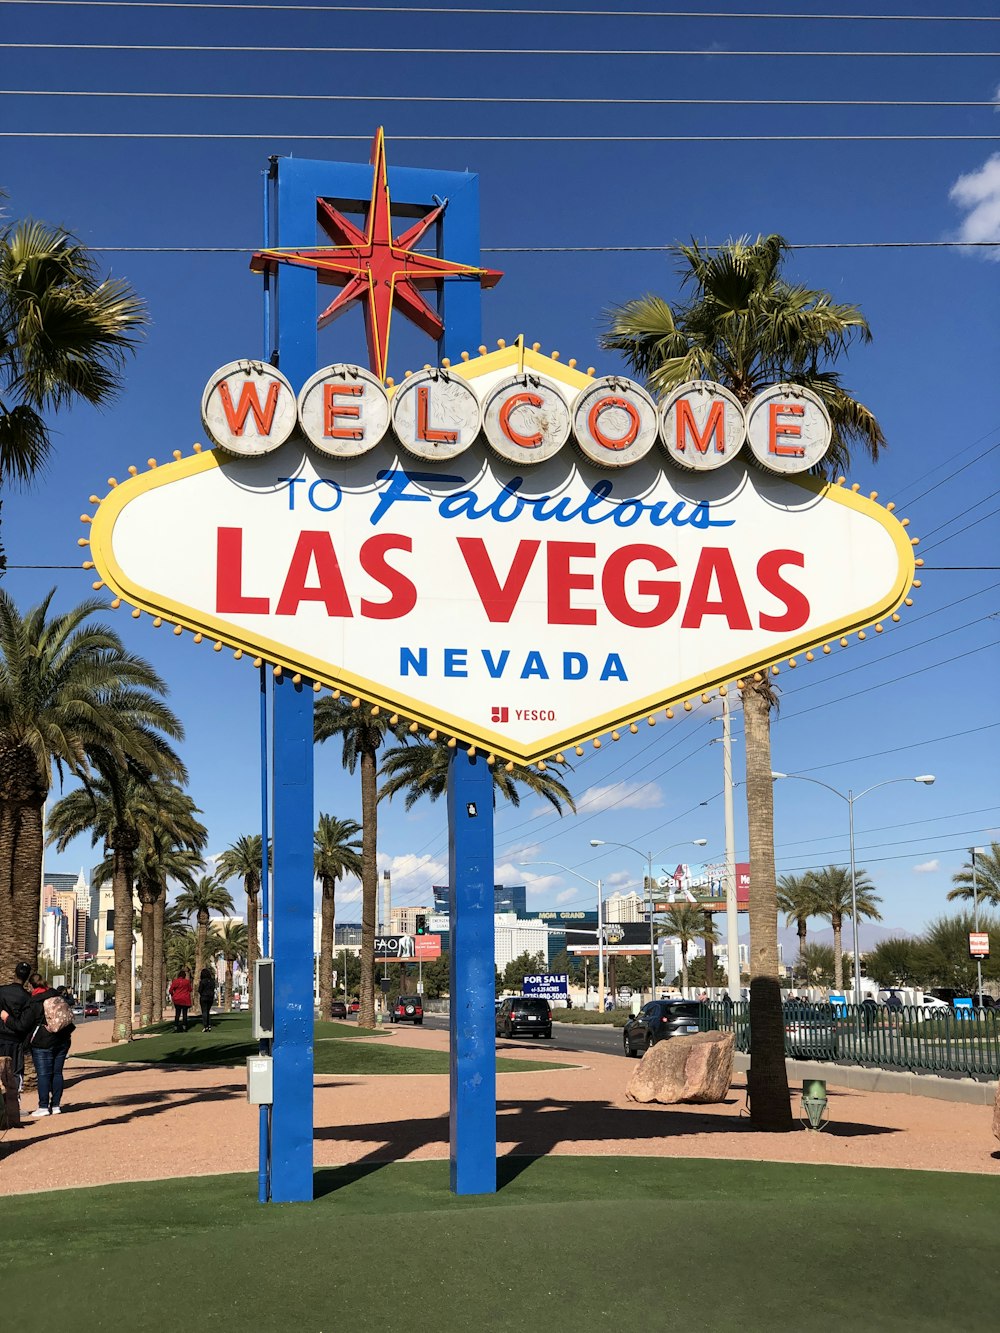 Bienvenue à Fabulous Las Vegas Nevada panneau pendant la journée